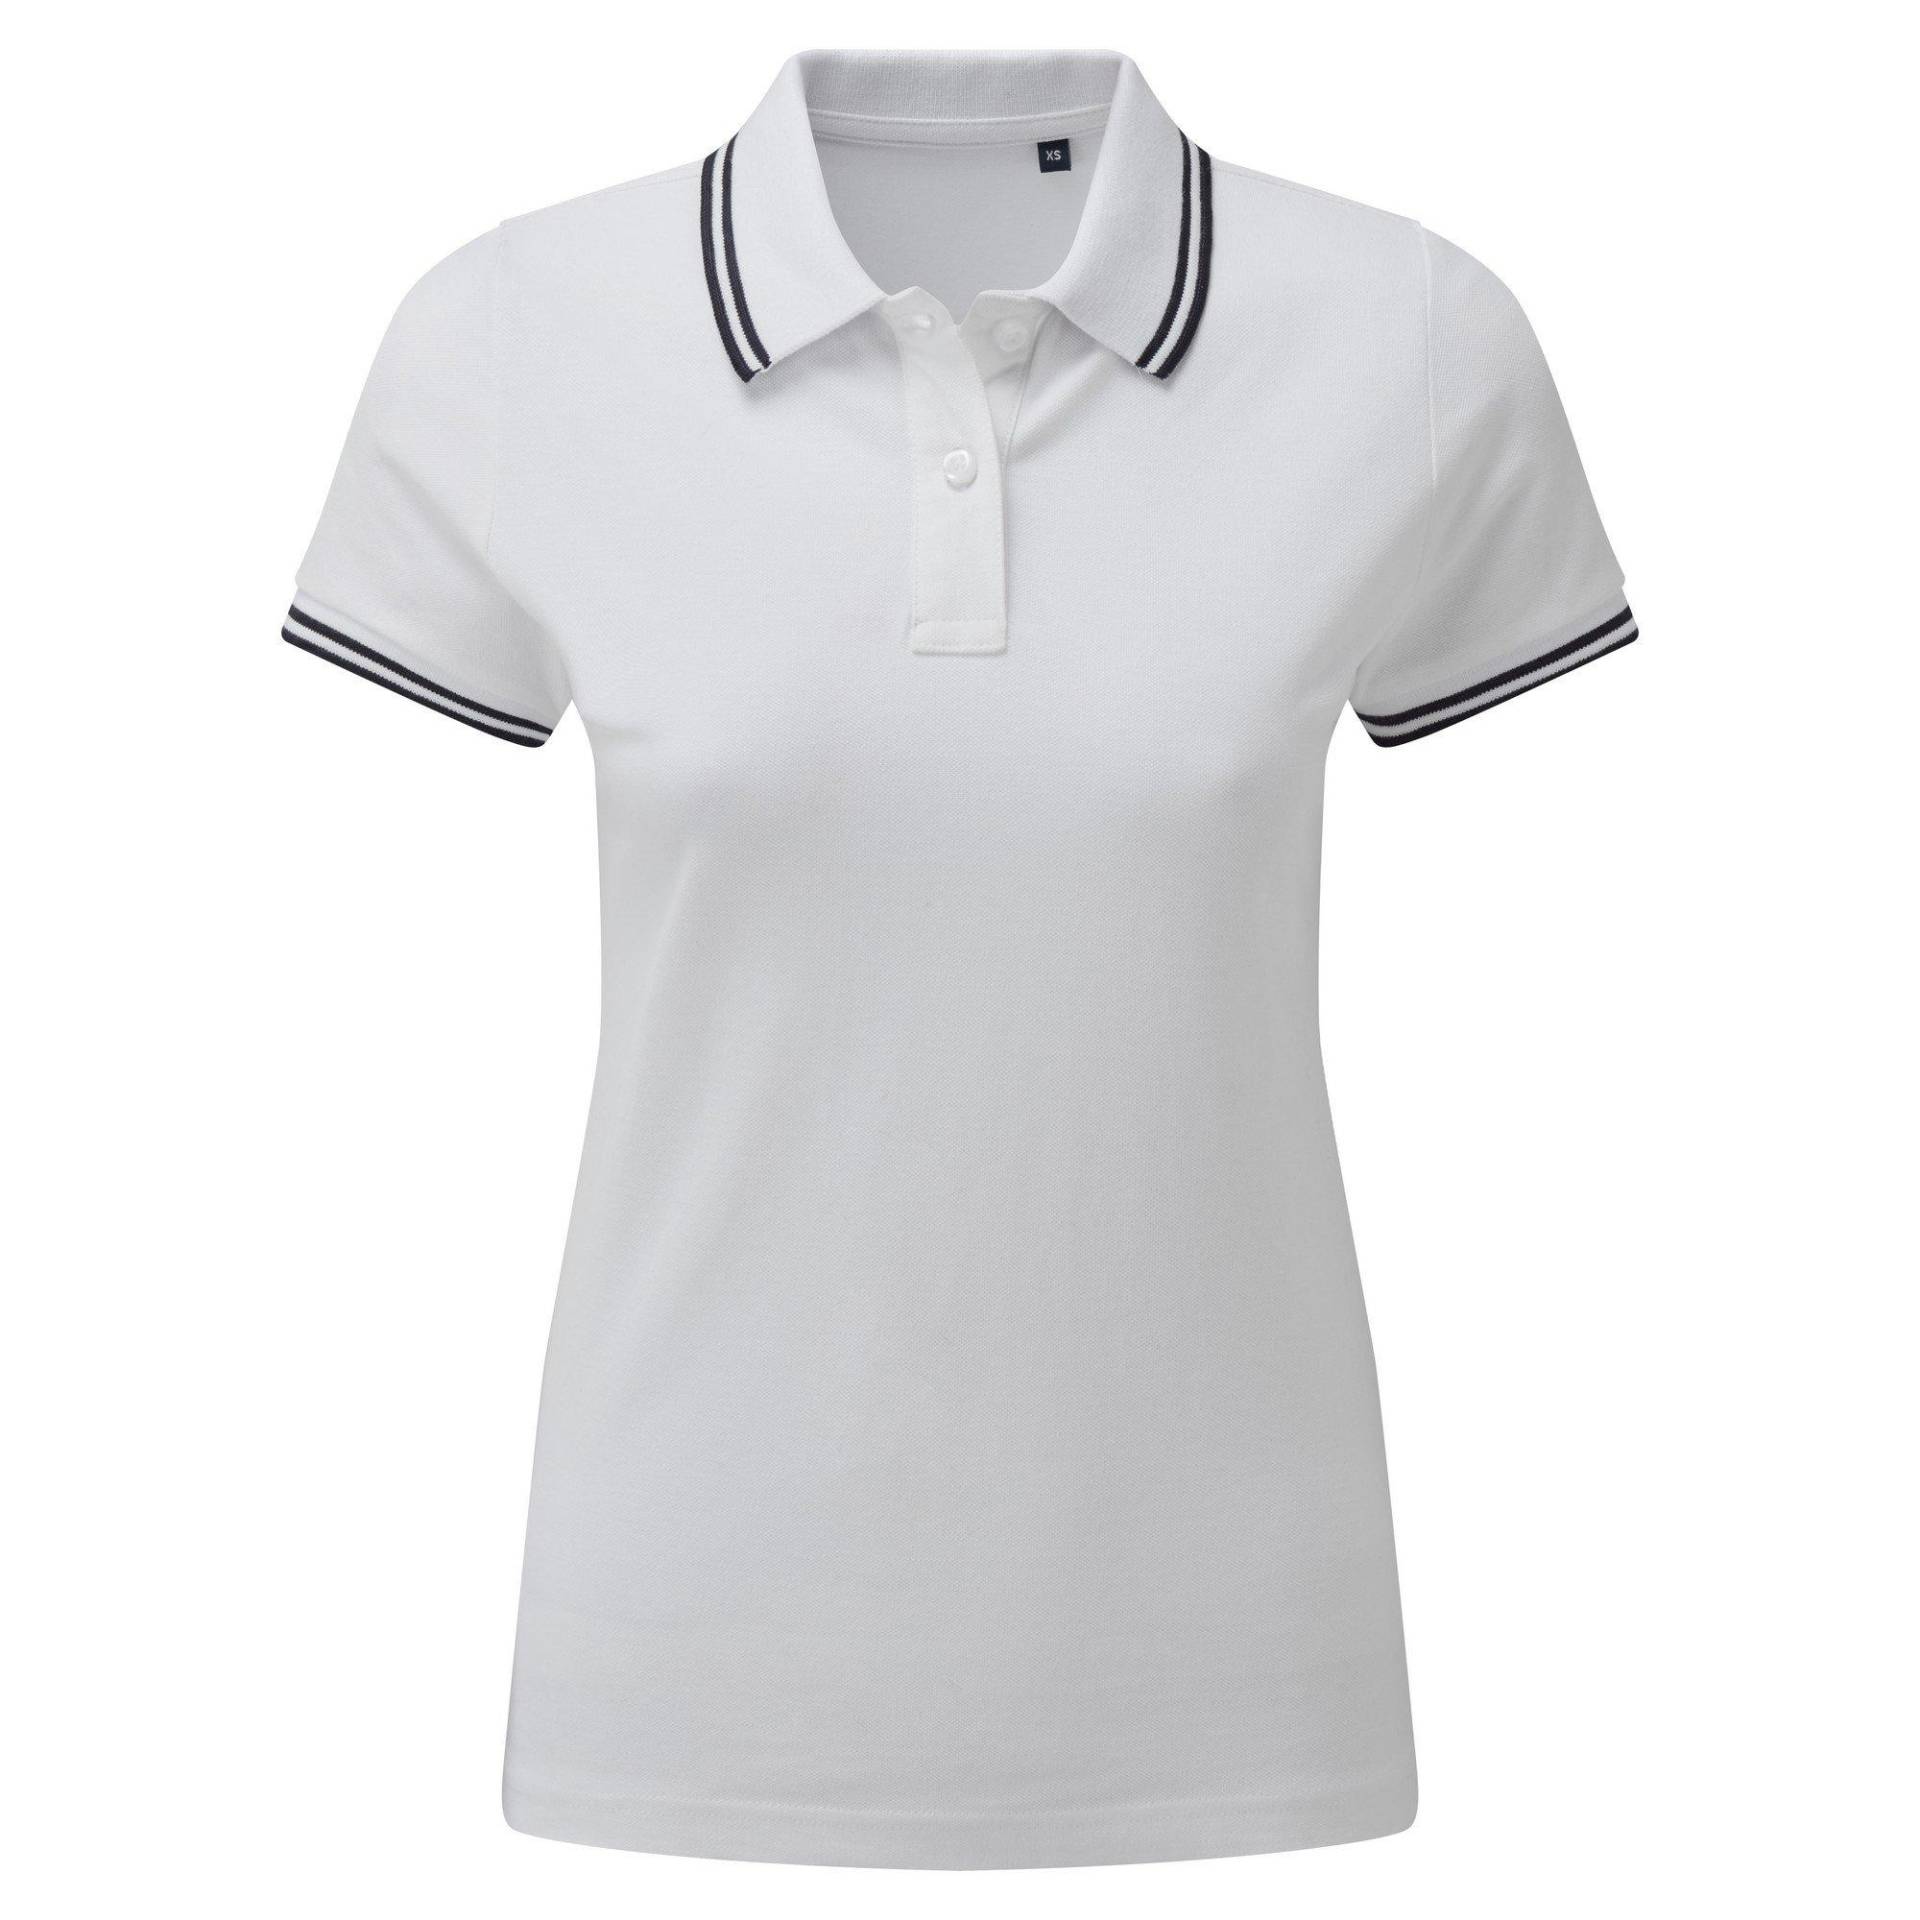 Poloshirt Mit Kontrastfarbenen Streifen Damen Weiss S von Asquith & Fox